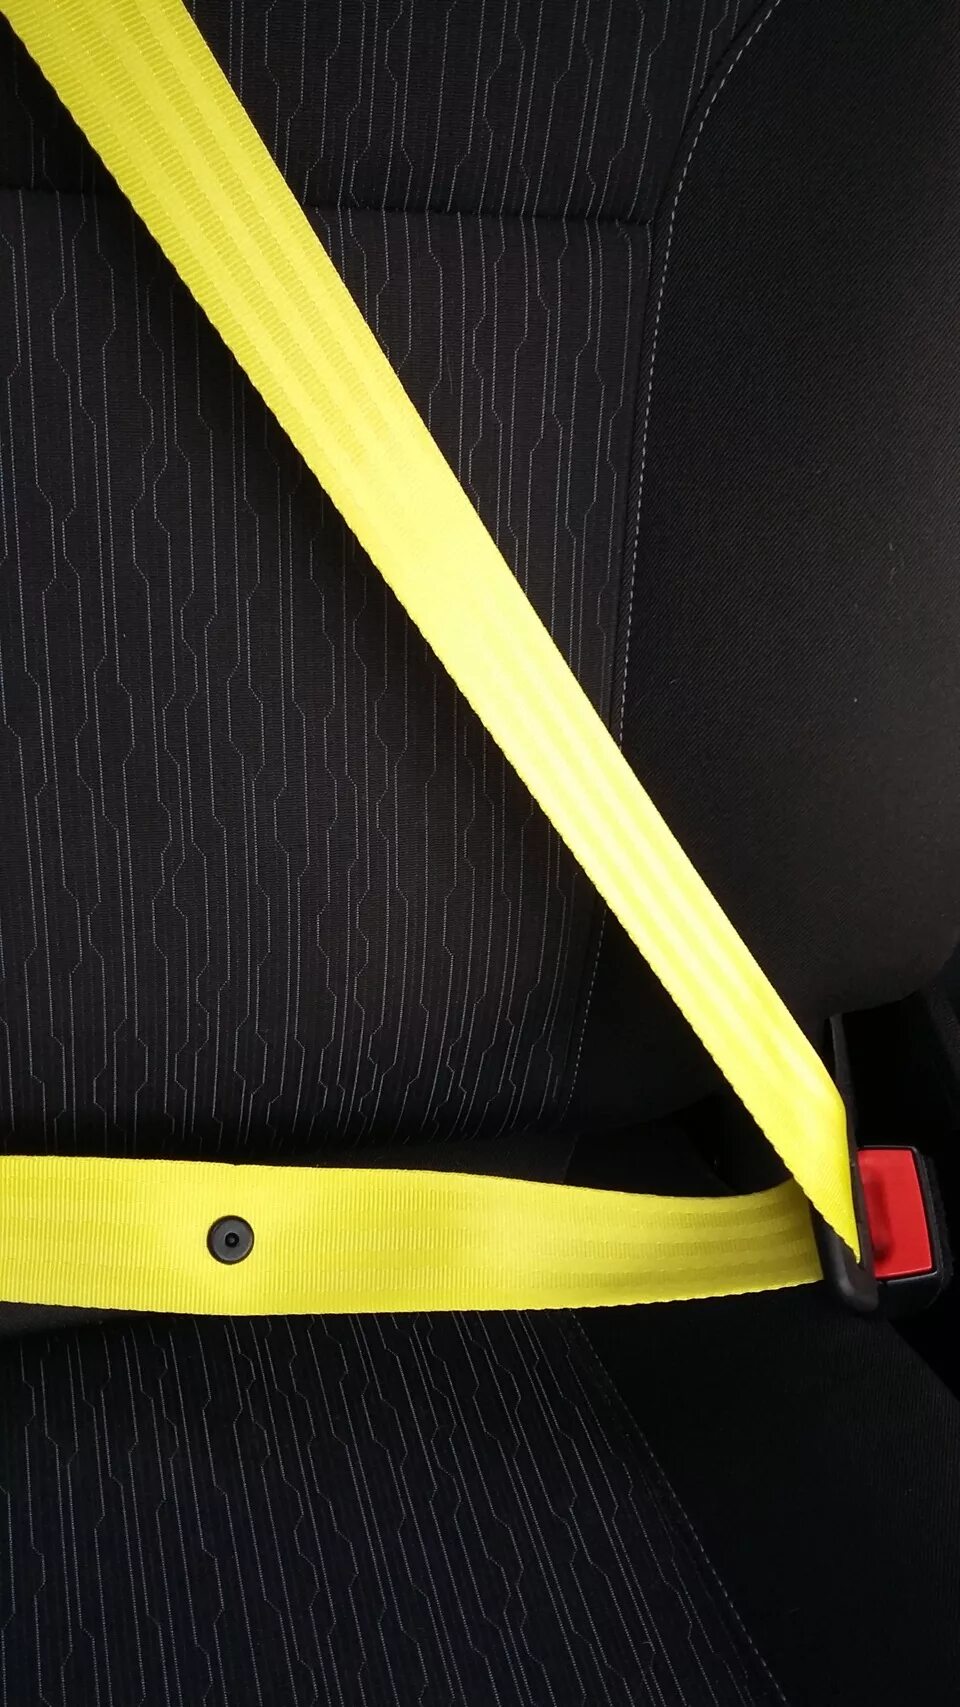 Желтые ремни безопасности Challenger. Ha301241 ремень безопасности желтый. Ремни безопасности жёлтый с чёрным Фиеста. E63 ремень безопасности желтый.